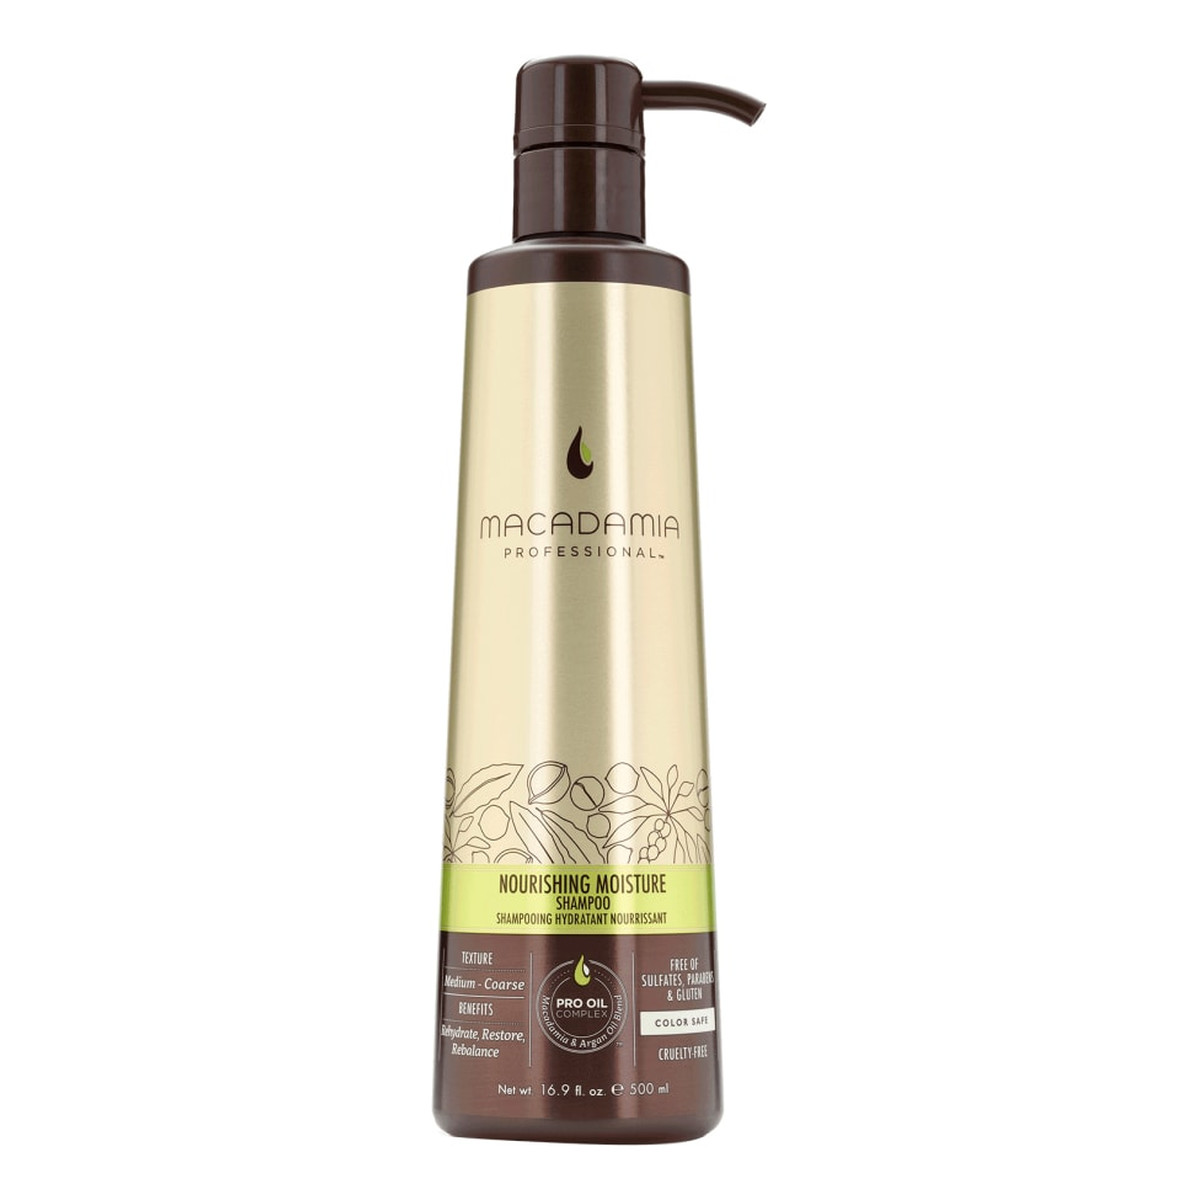 Macadamia Professional Nourishing Moisture szampon do włosów suchych 500ml